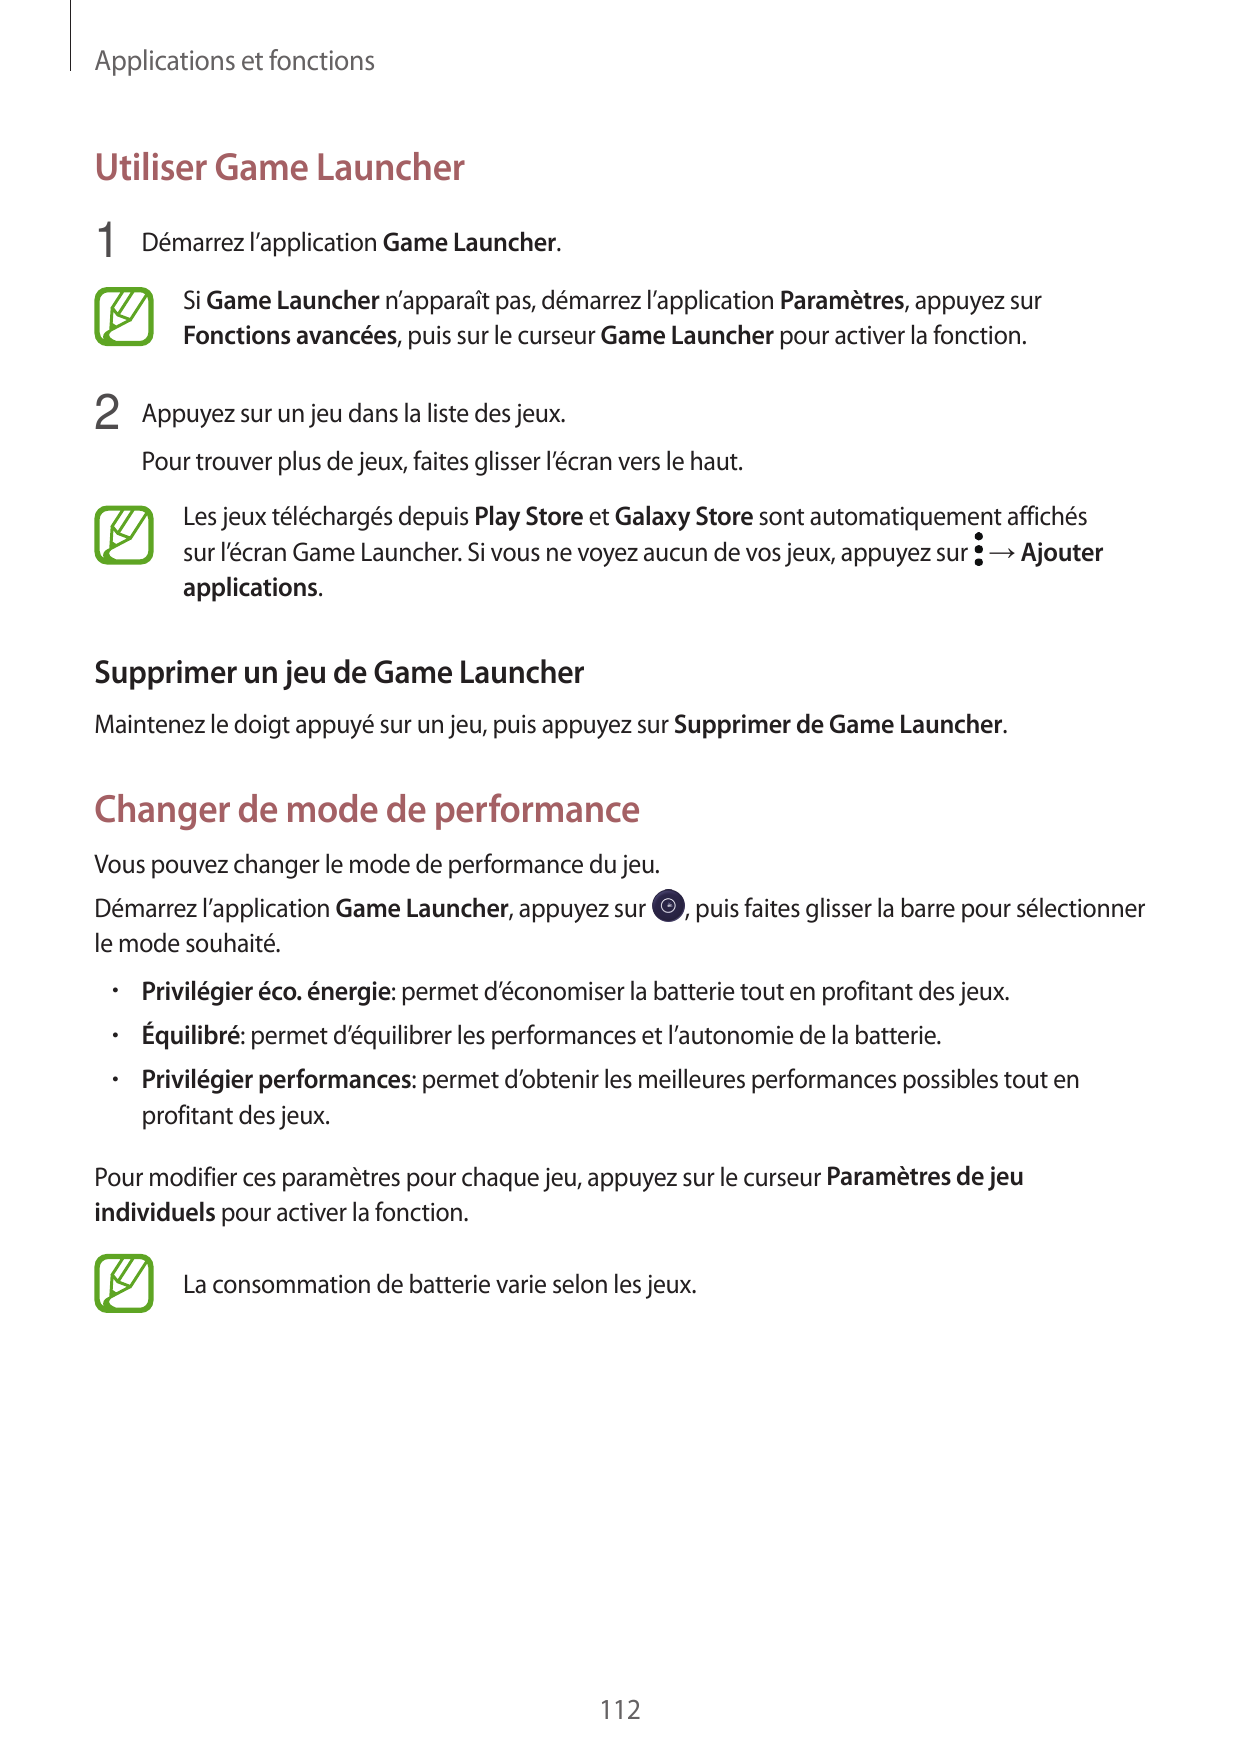 Applications et fonctionsUtiliser Game Launcher1 Démarrez l’application Game Launcher.Si Game Launcher n’apparaît pas, démarrez 